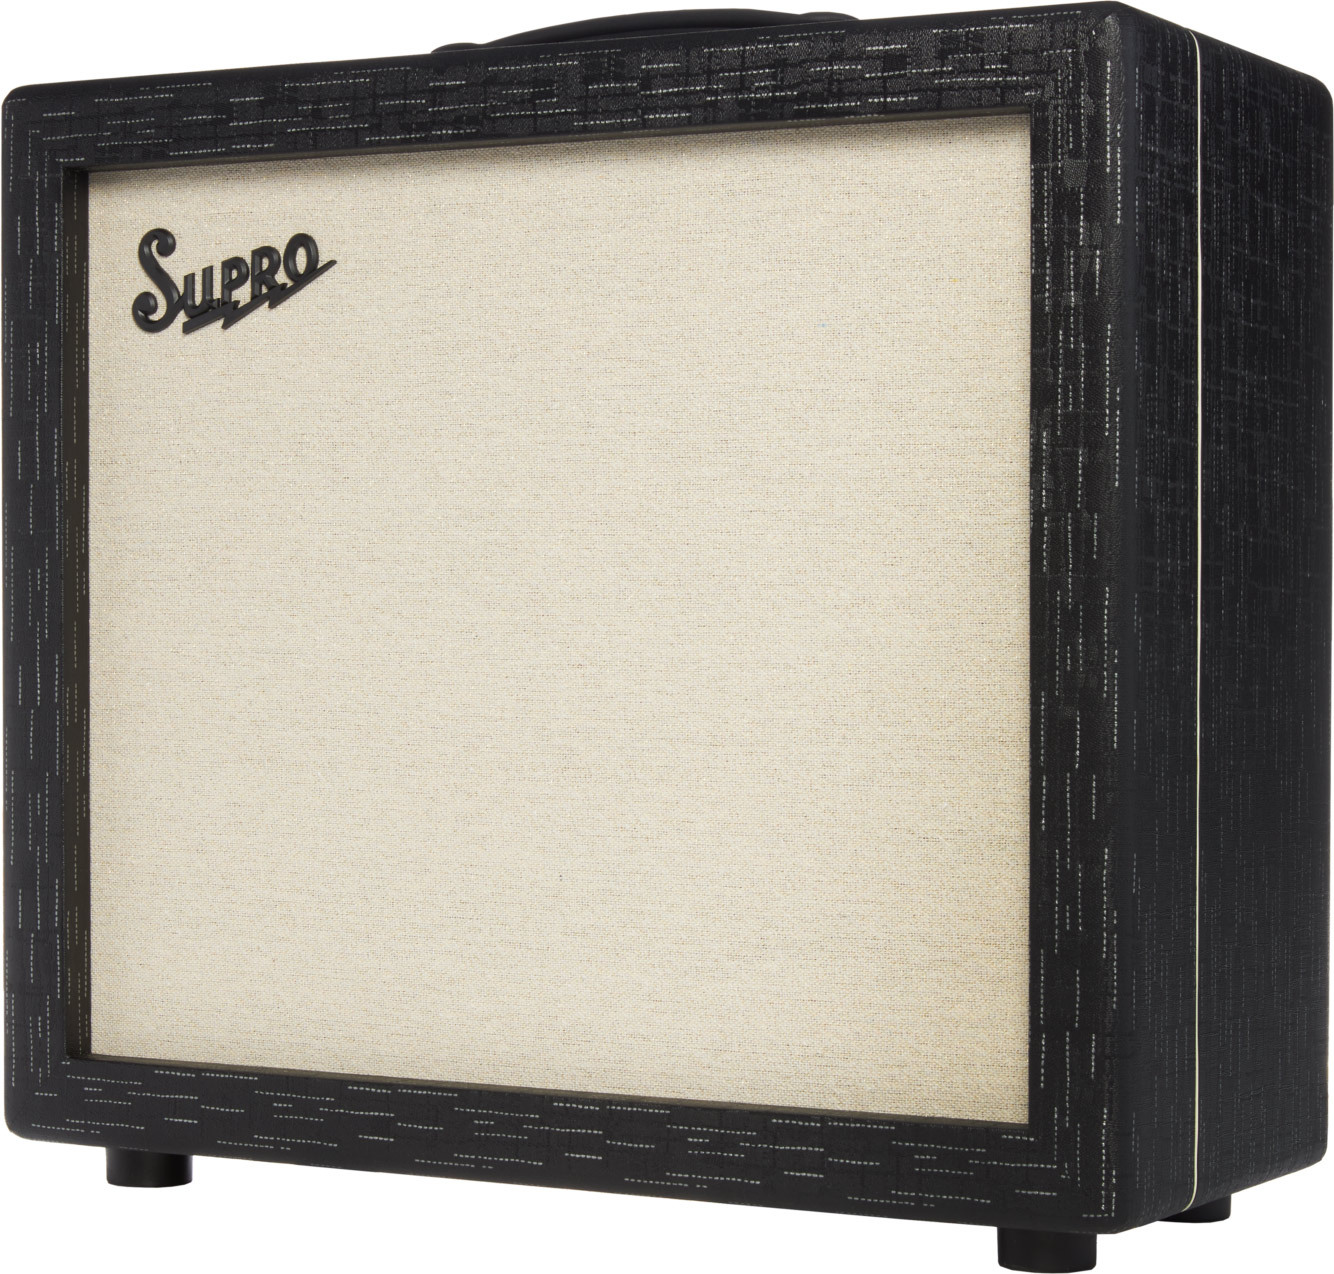 Supro Royale 1x12 Guitar Cab 1732 1x12 75w 8-ohms Black Scandia - Boxen für E-Gitarre Verstärker - Main picture